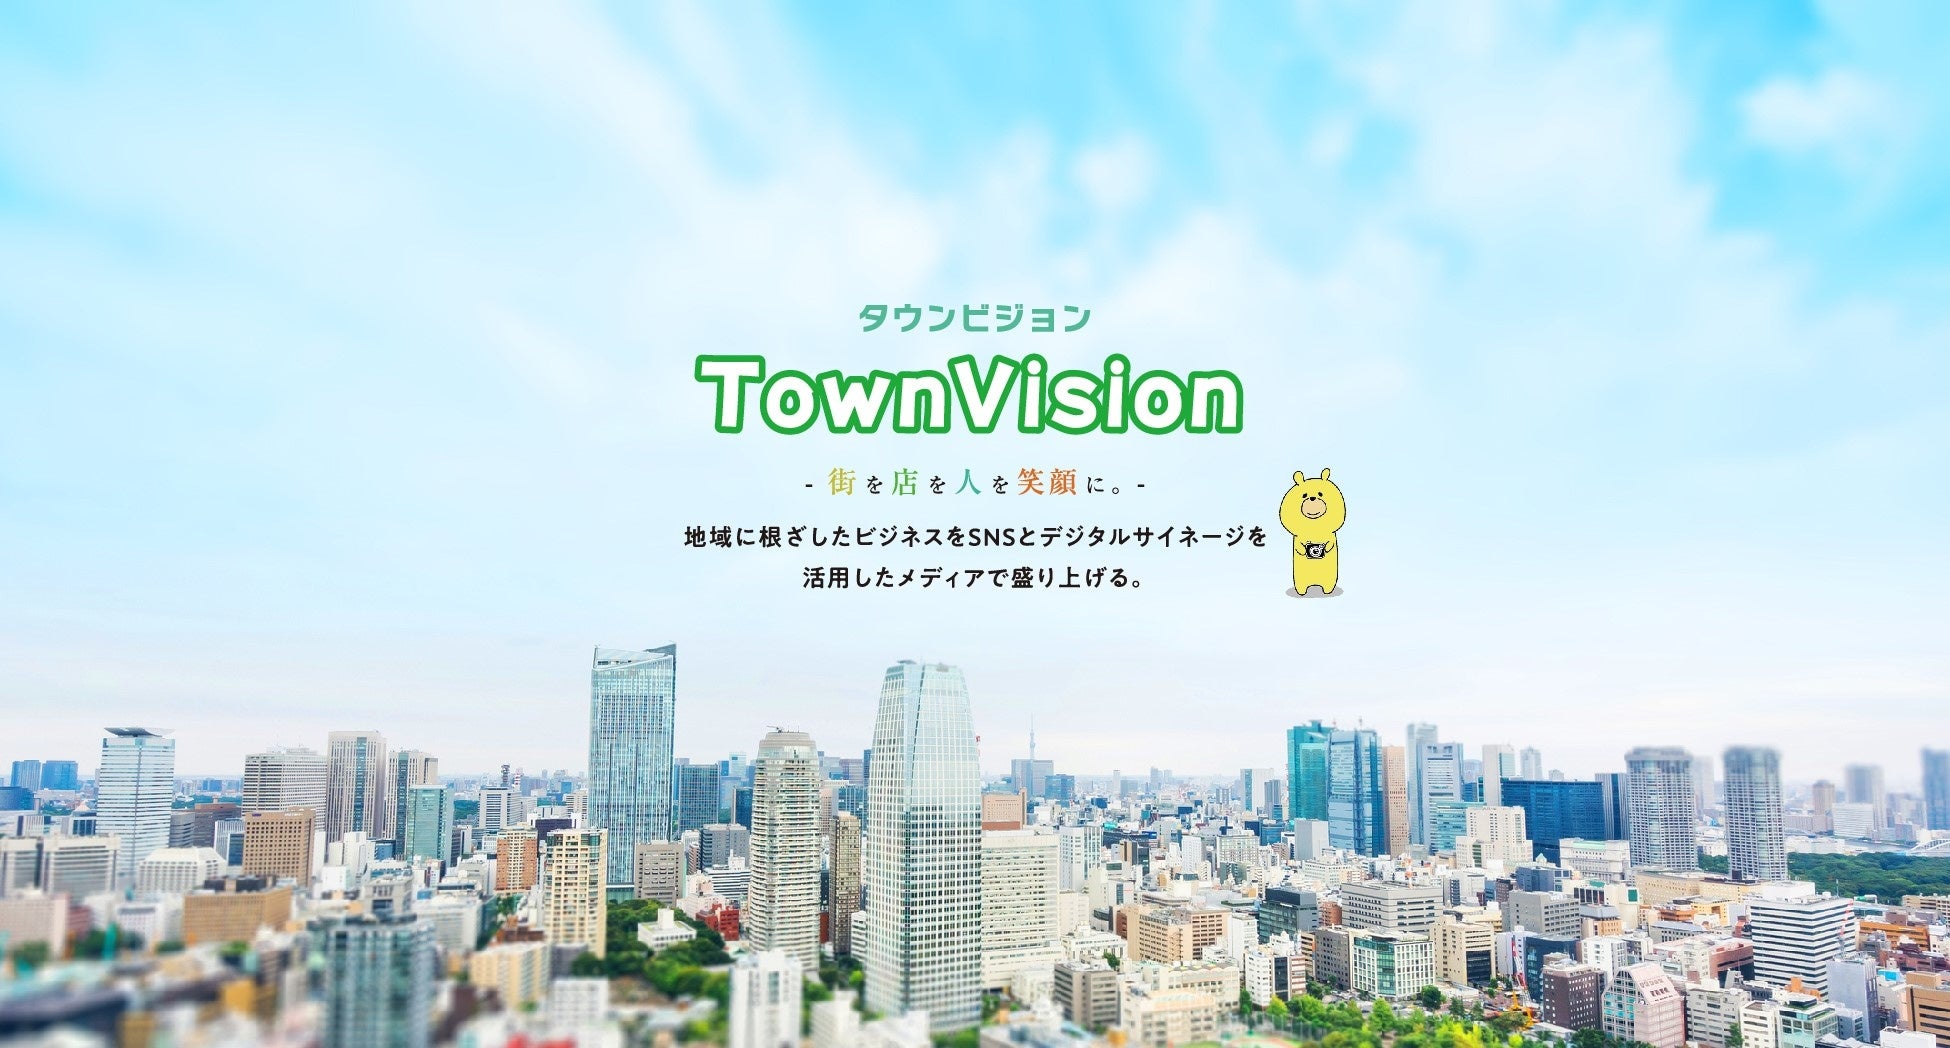 【タウンビジョン】大型マンション施設のコミュニティ形成に向けたプラットフォーム事業に参画のサブ画像1